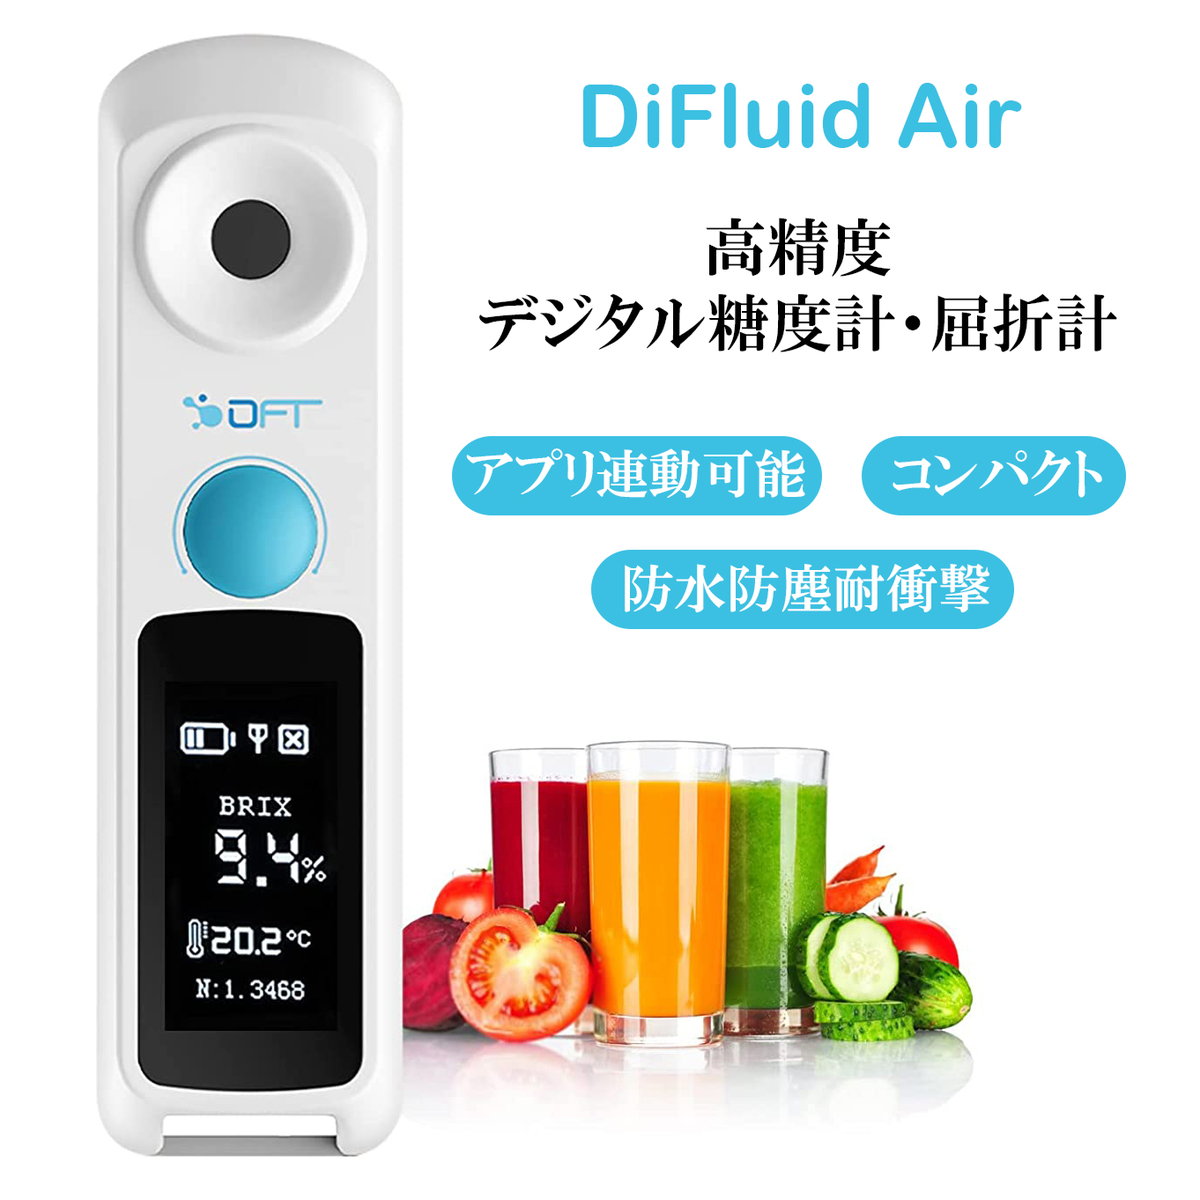 DiFluid Air 小型 高精度 糖度計 デジタル 屈折計 測定精度±0.1% Brix検測範囲0-32% ハンディタイプ糖..